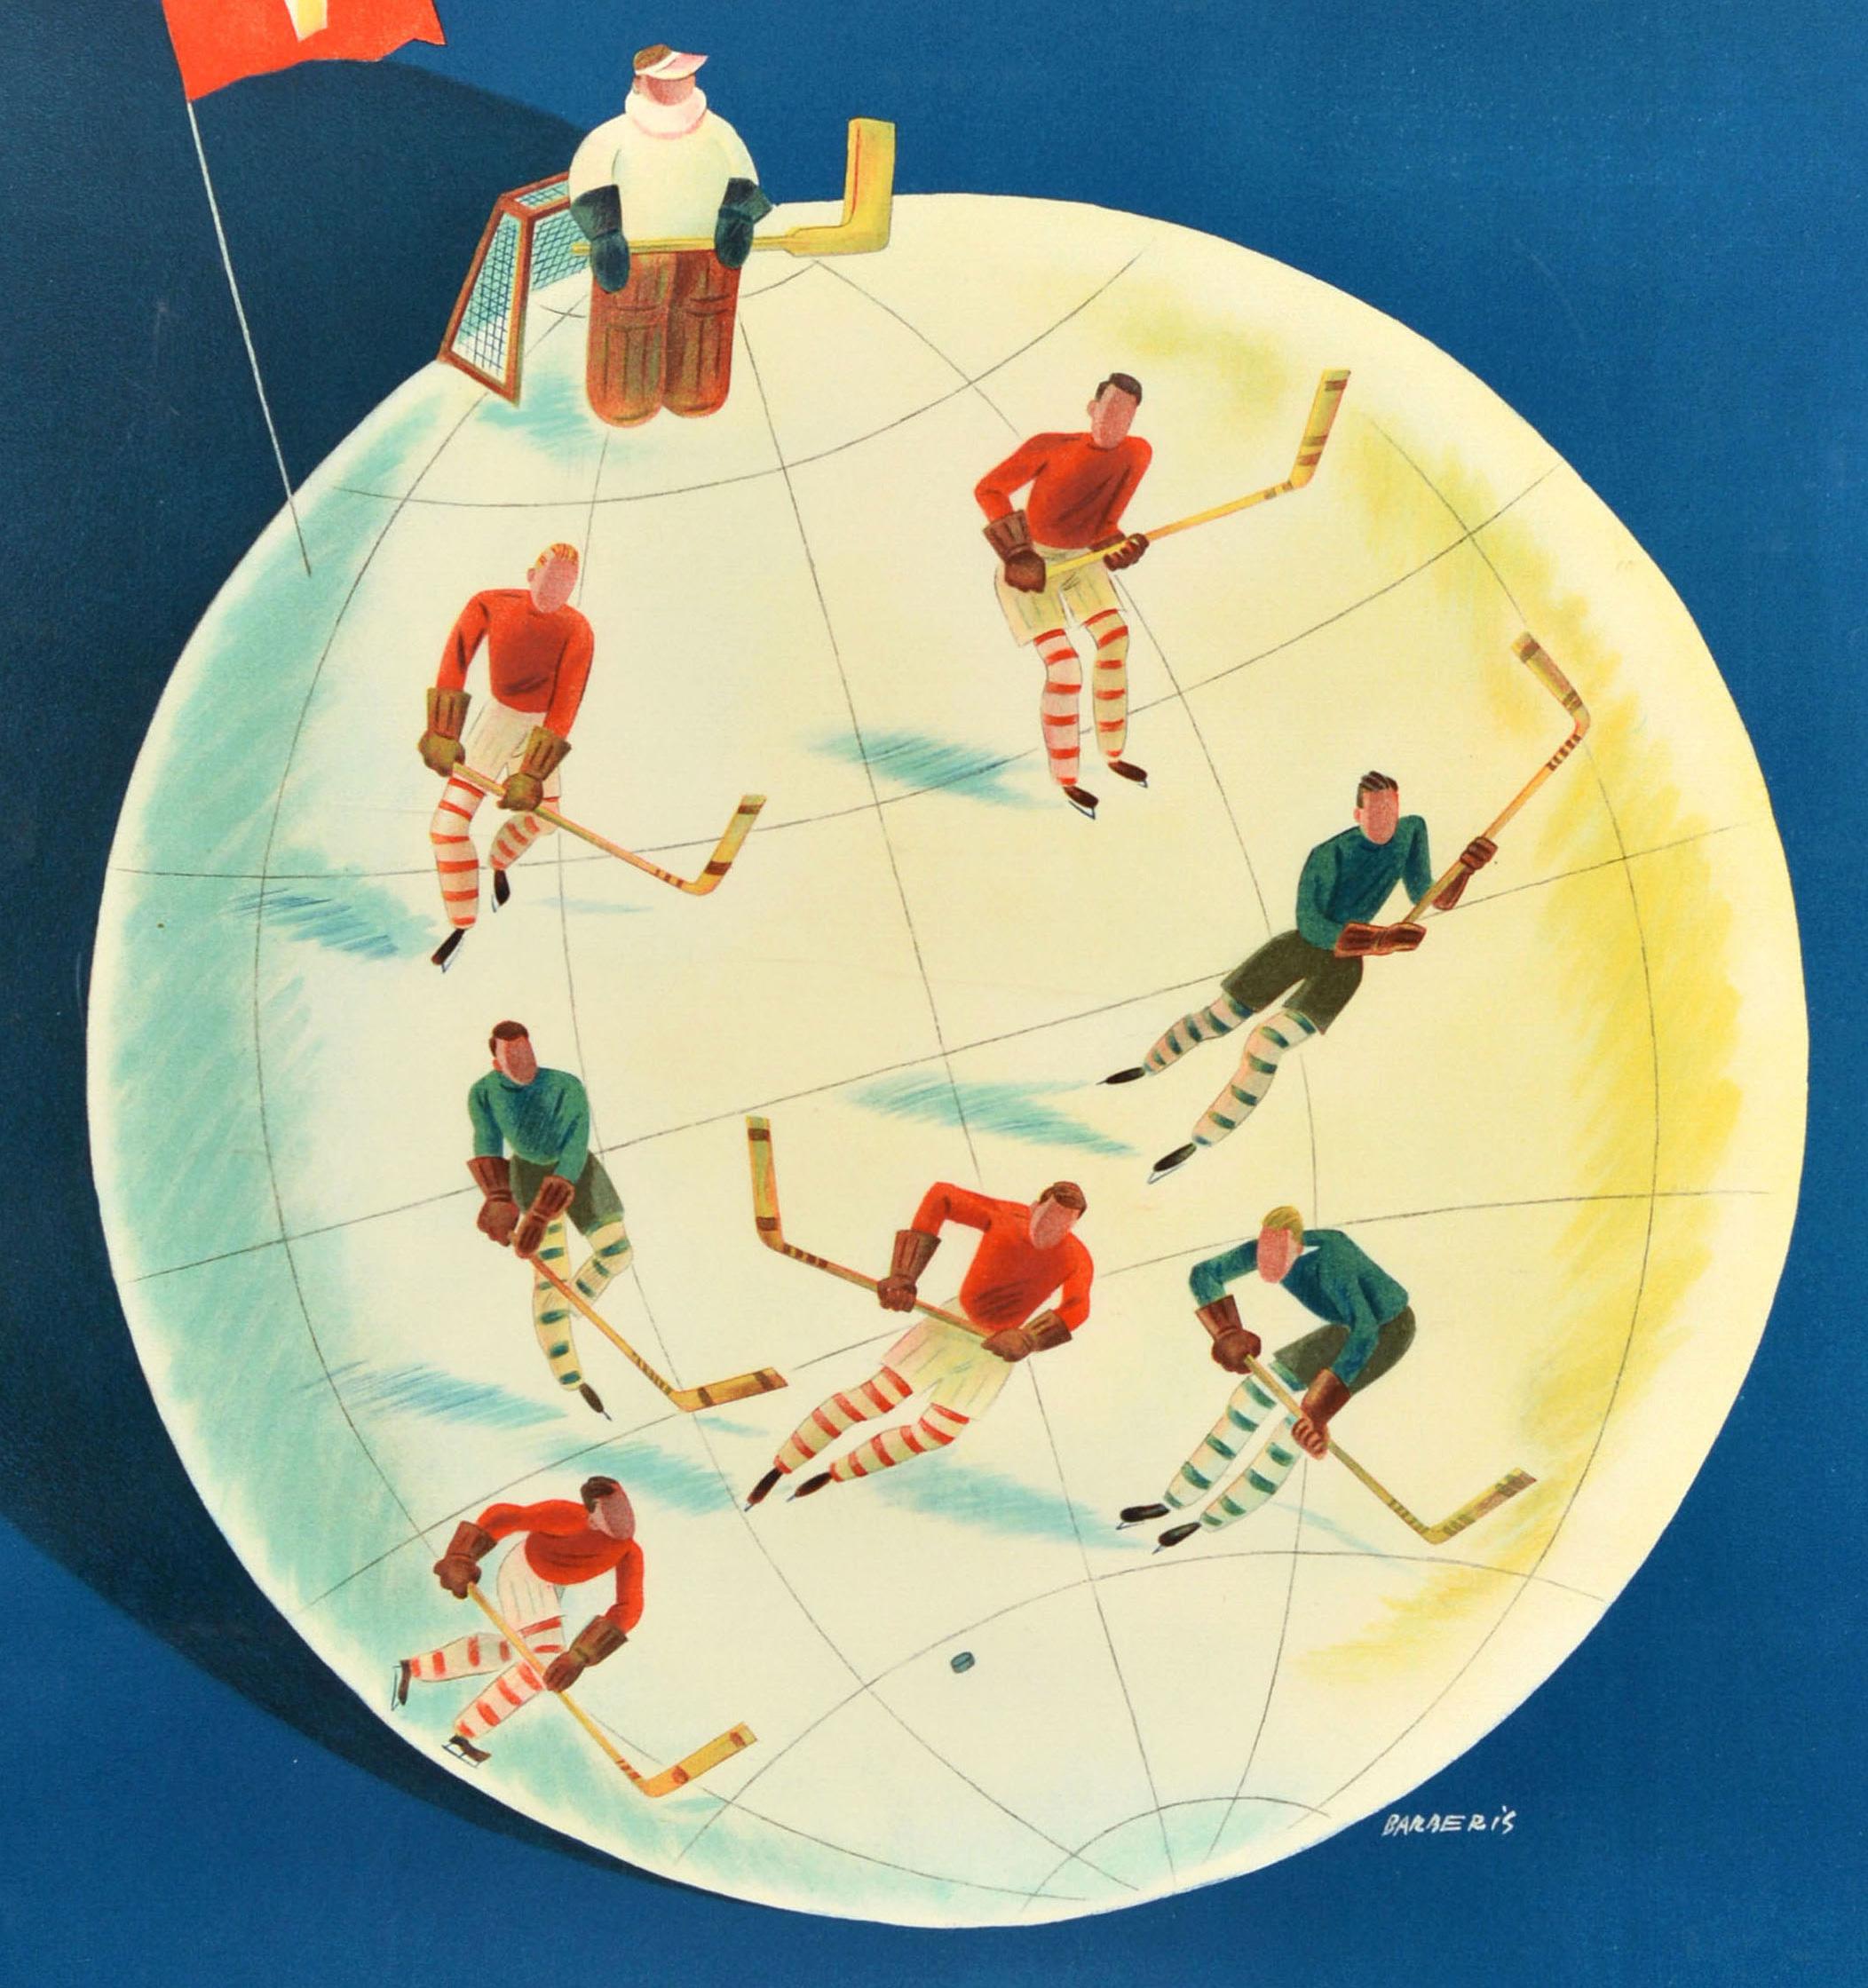 Affiche sportive originale pour la patinoire Dolder Eisbahn de Zurich, ouverte tous les jours de 9 h à 22 h 30, avec un superbe dessin de l'artiste suisse Franco Barberis (1905-1992) représentant des joueurs de hockey sur glace sur un globe